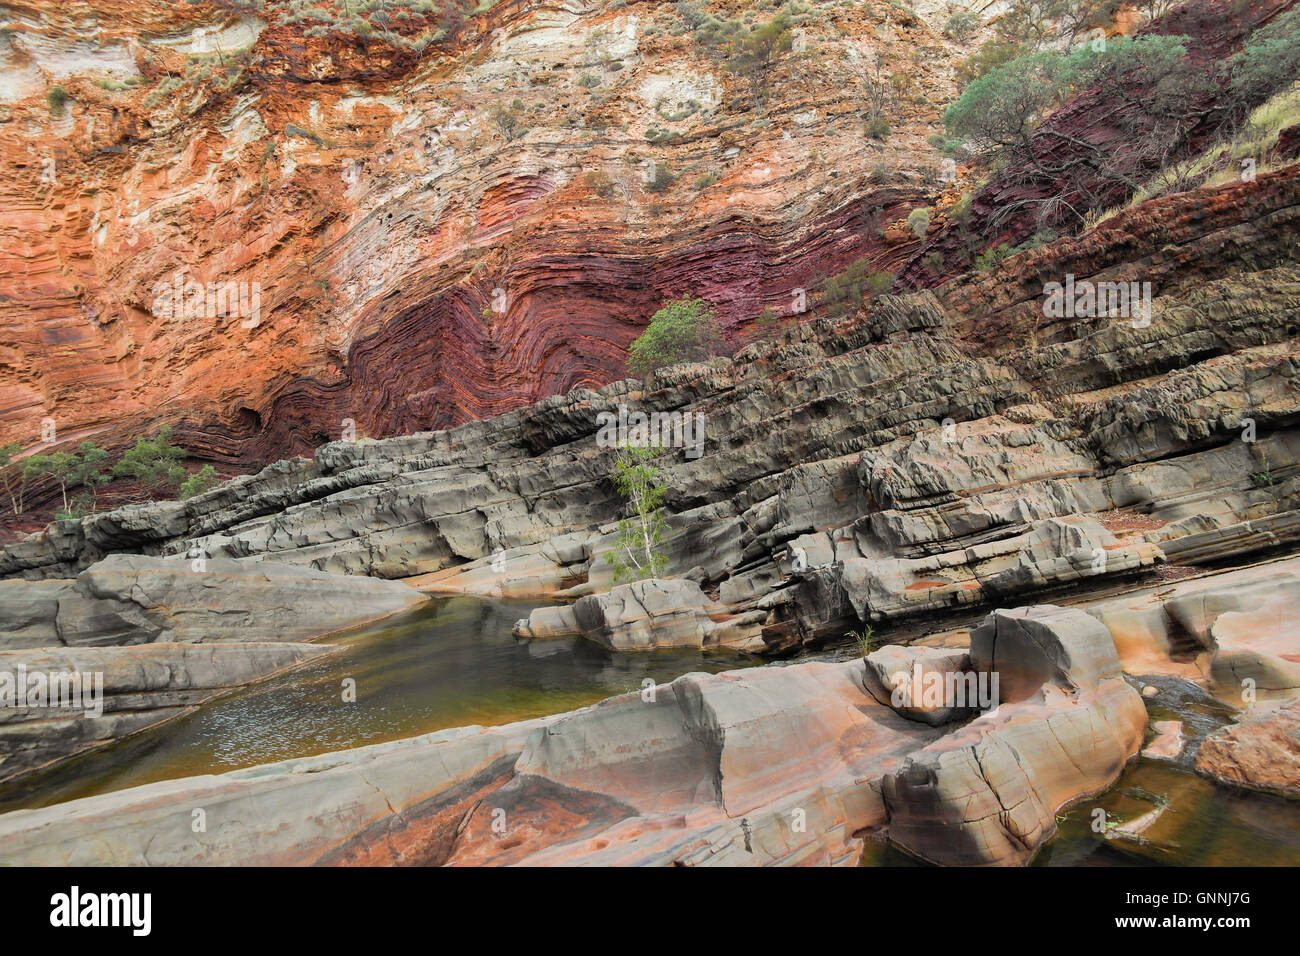 Formation en pierre à Hamersley Gorge, dans le parc national de Karijini Pilbara en Australie occidentale - - Banque D'Images